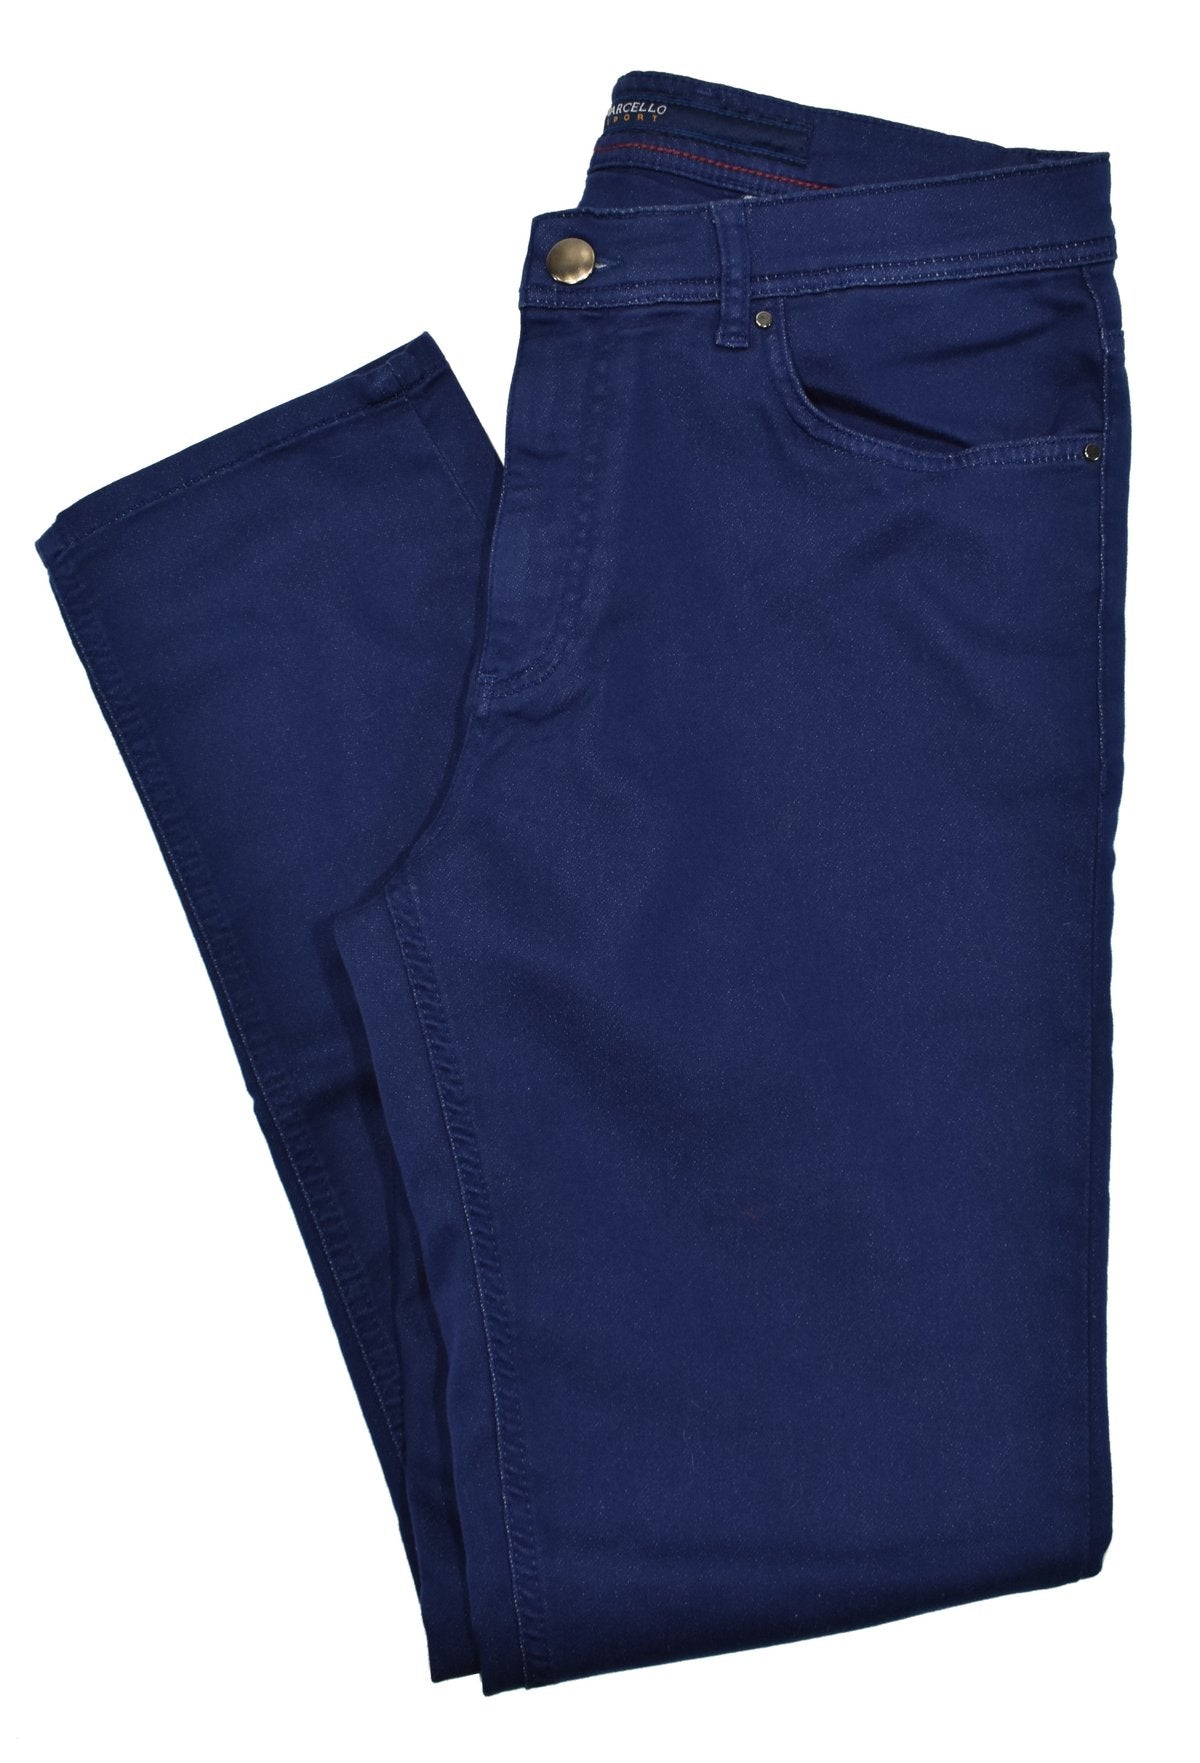 Essex 10.75oz Dark Wash Stretch Jeans - Custom Fit Pants